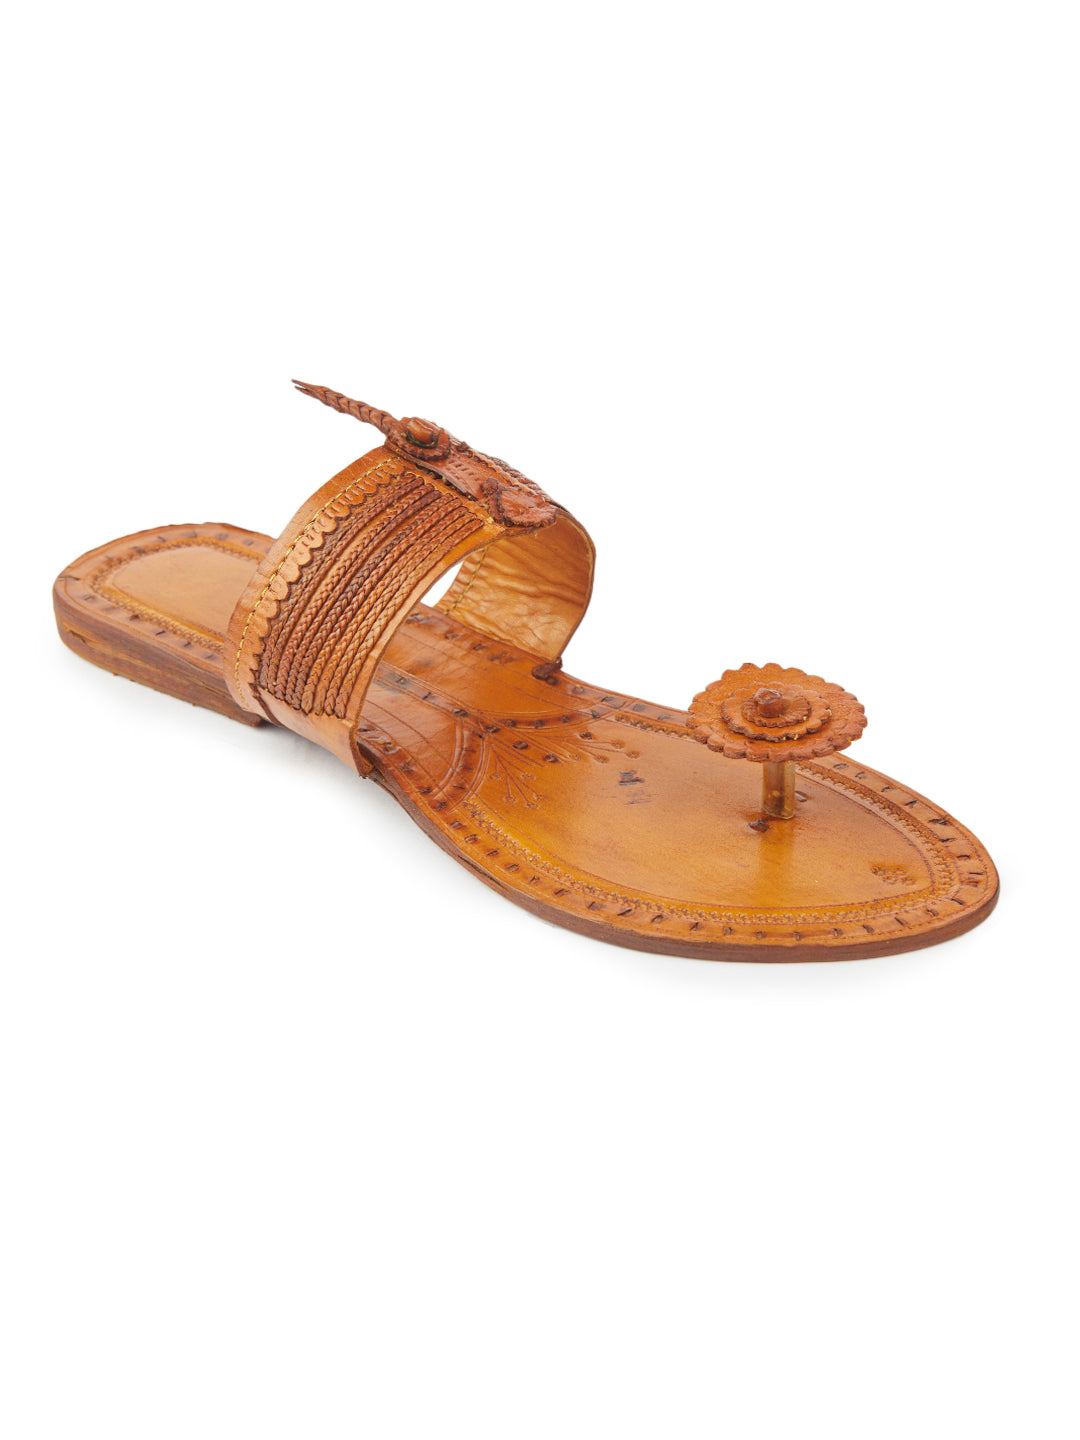 Vintage Toes - Women's Kolhapuri Footwear